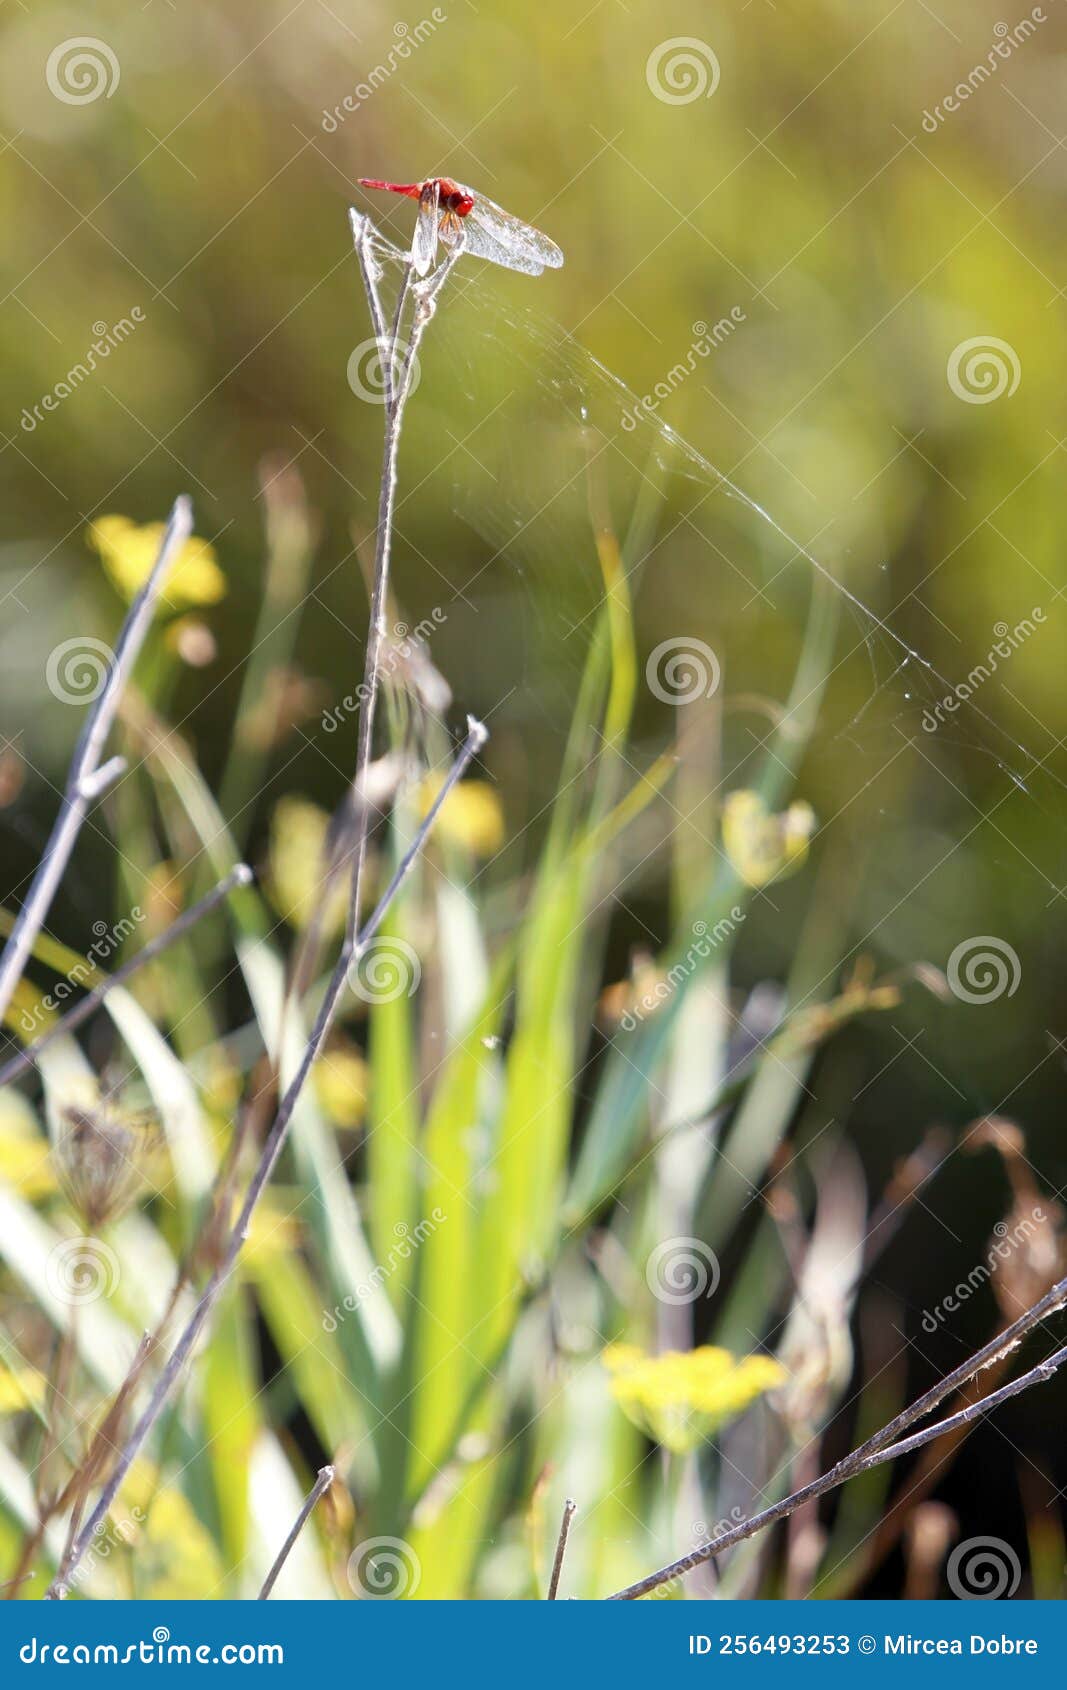 enallagma cyathigerum. liblula azul sobre una flor de pradera. una liblula de dragn de proximidad con ojos grandes se sienta en un